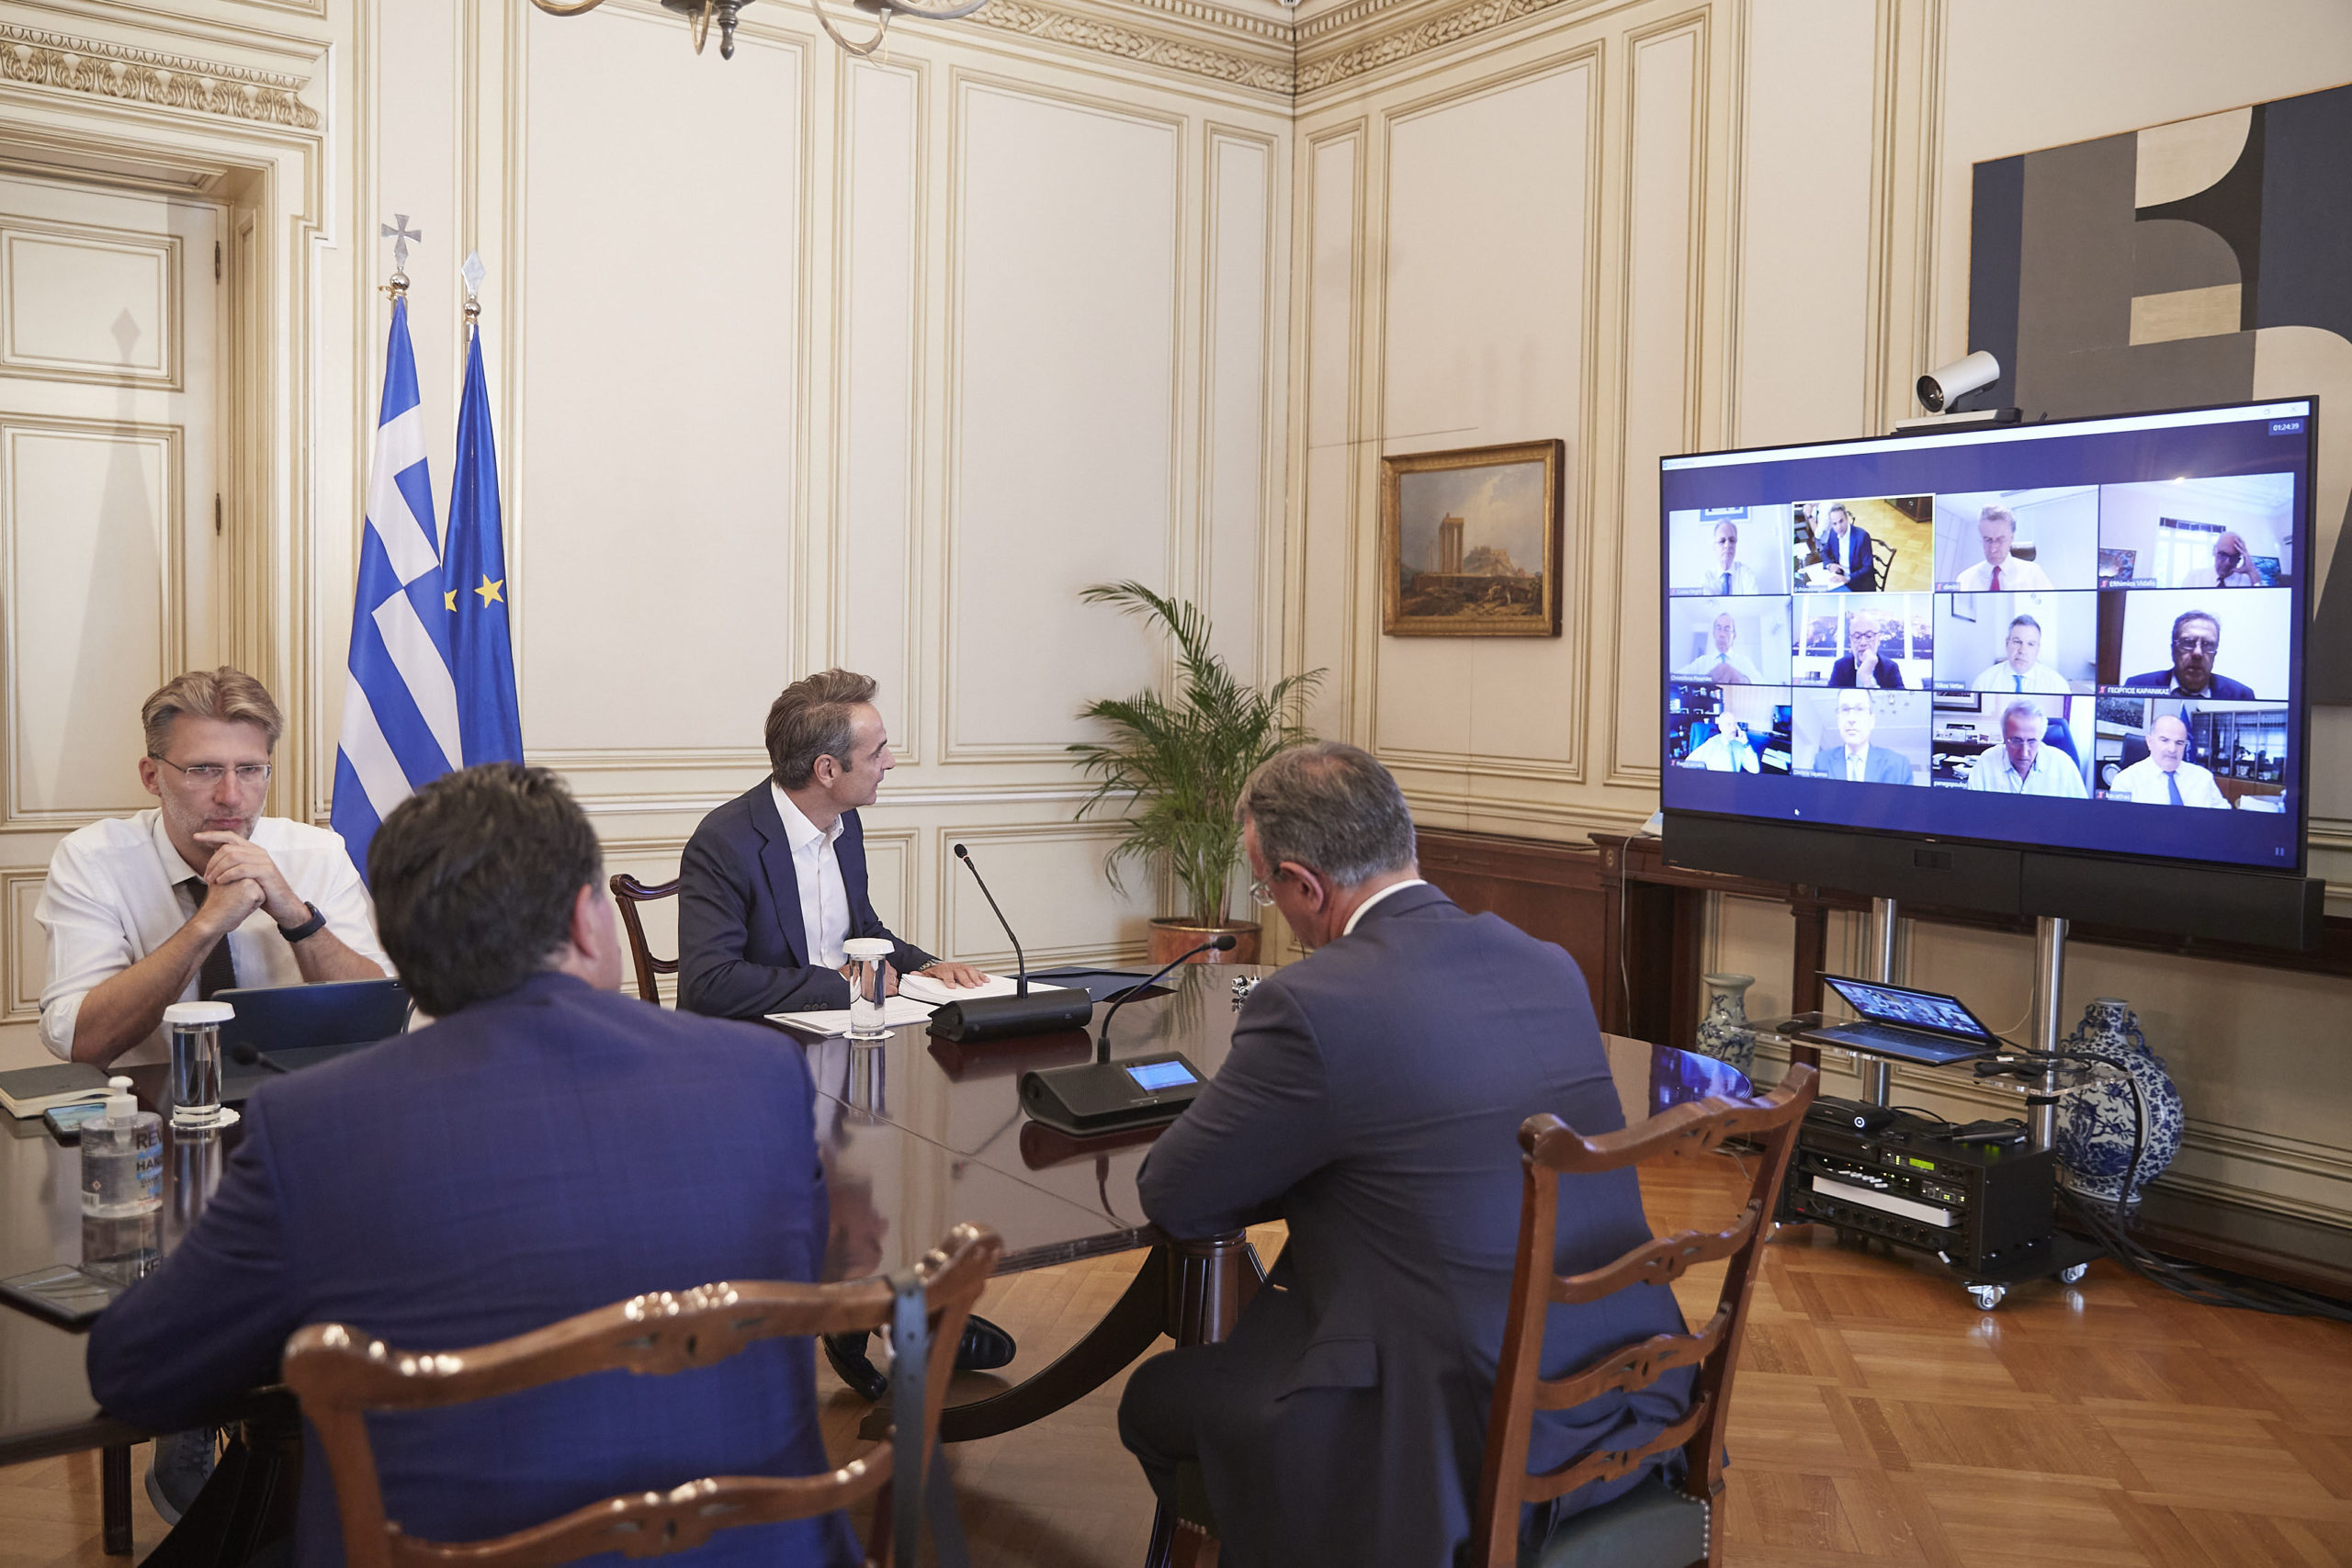 Επί τάπητος η Έκθεση της Επιτροπής Πισσαρίδη - Τηλεδιάσκεψη υπό τον πρωθυπουργό